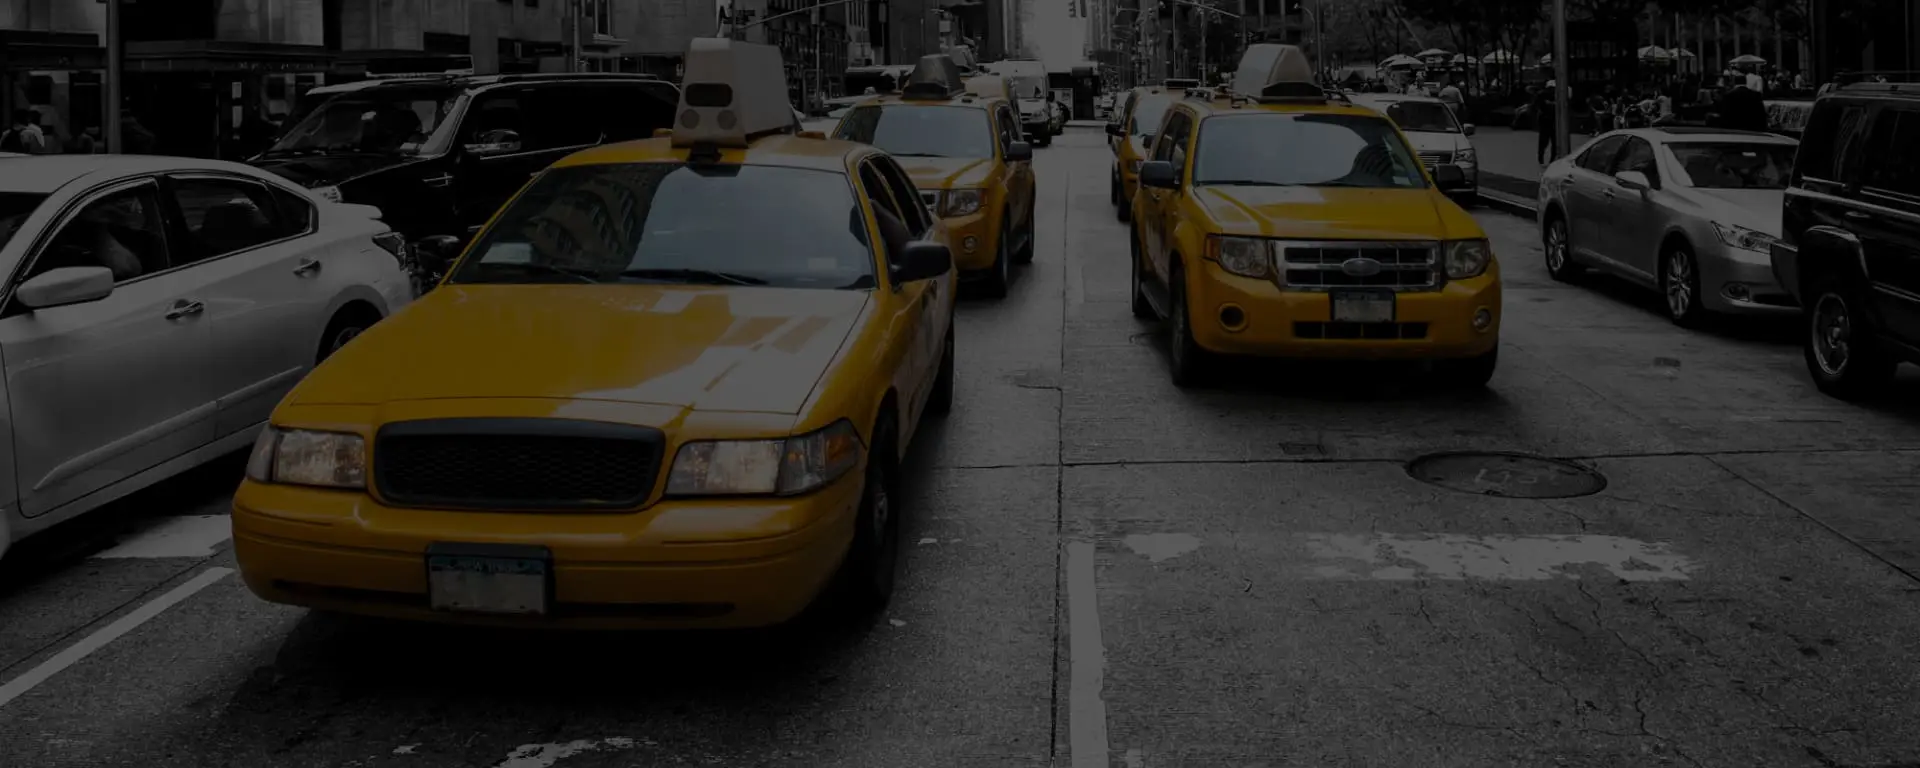 trio-an-Interactive-taxi-booking-app